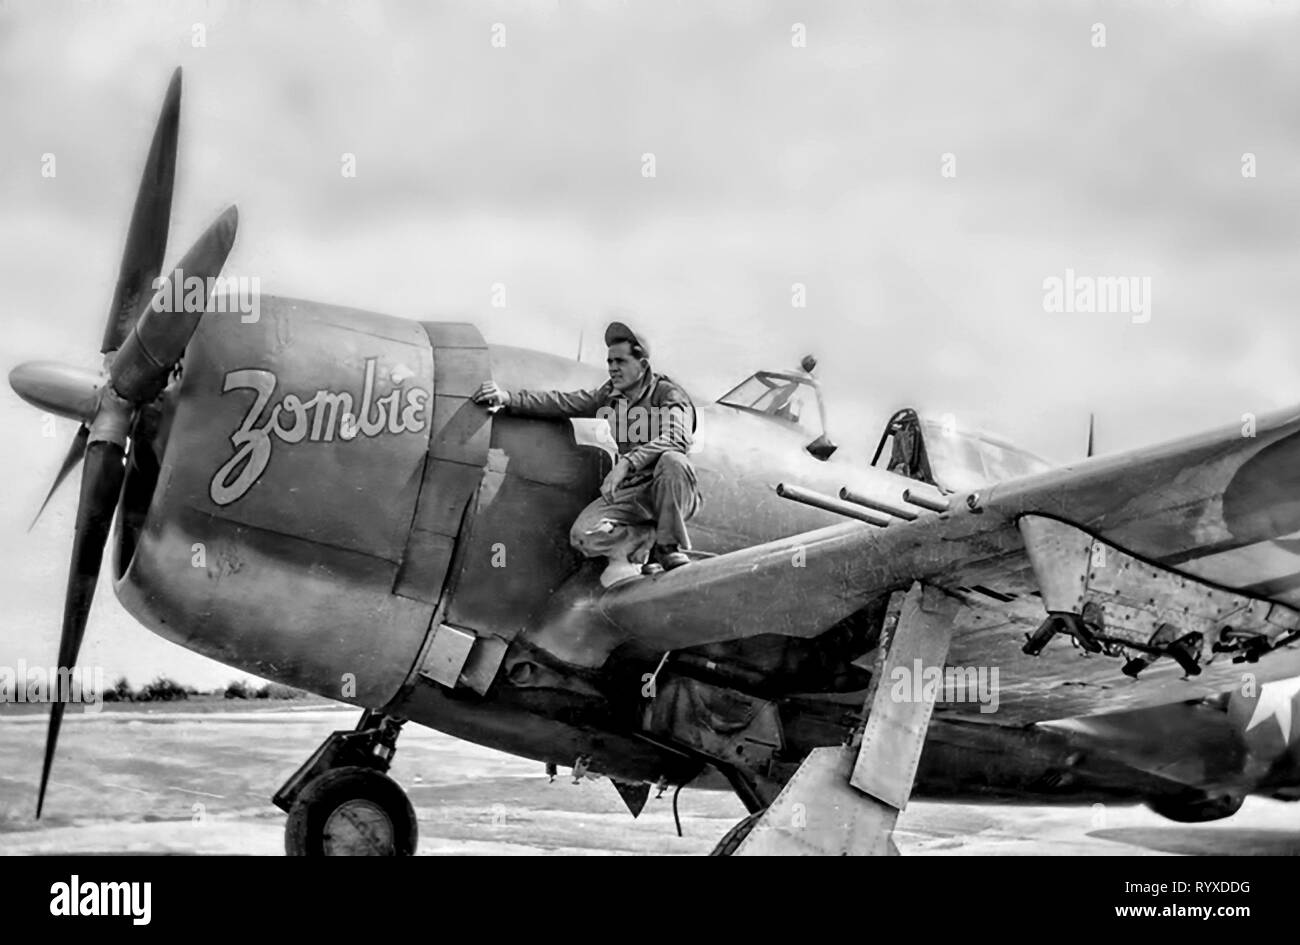 Les photographies et les souvenirs personnels de combats américains pendant la Seconde Guerre mondiale. P-47 Thunderbolt fighter le personnel au sol et le nez de l'art. Banque D'Images